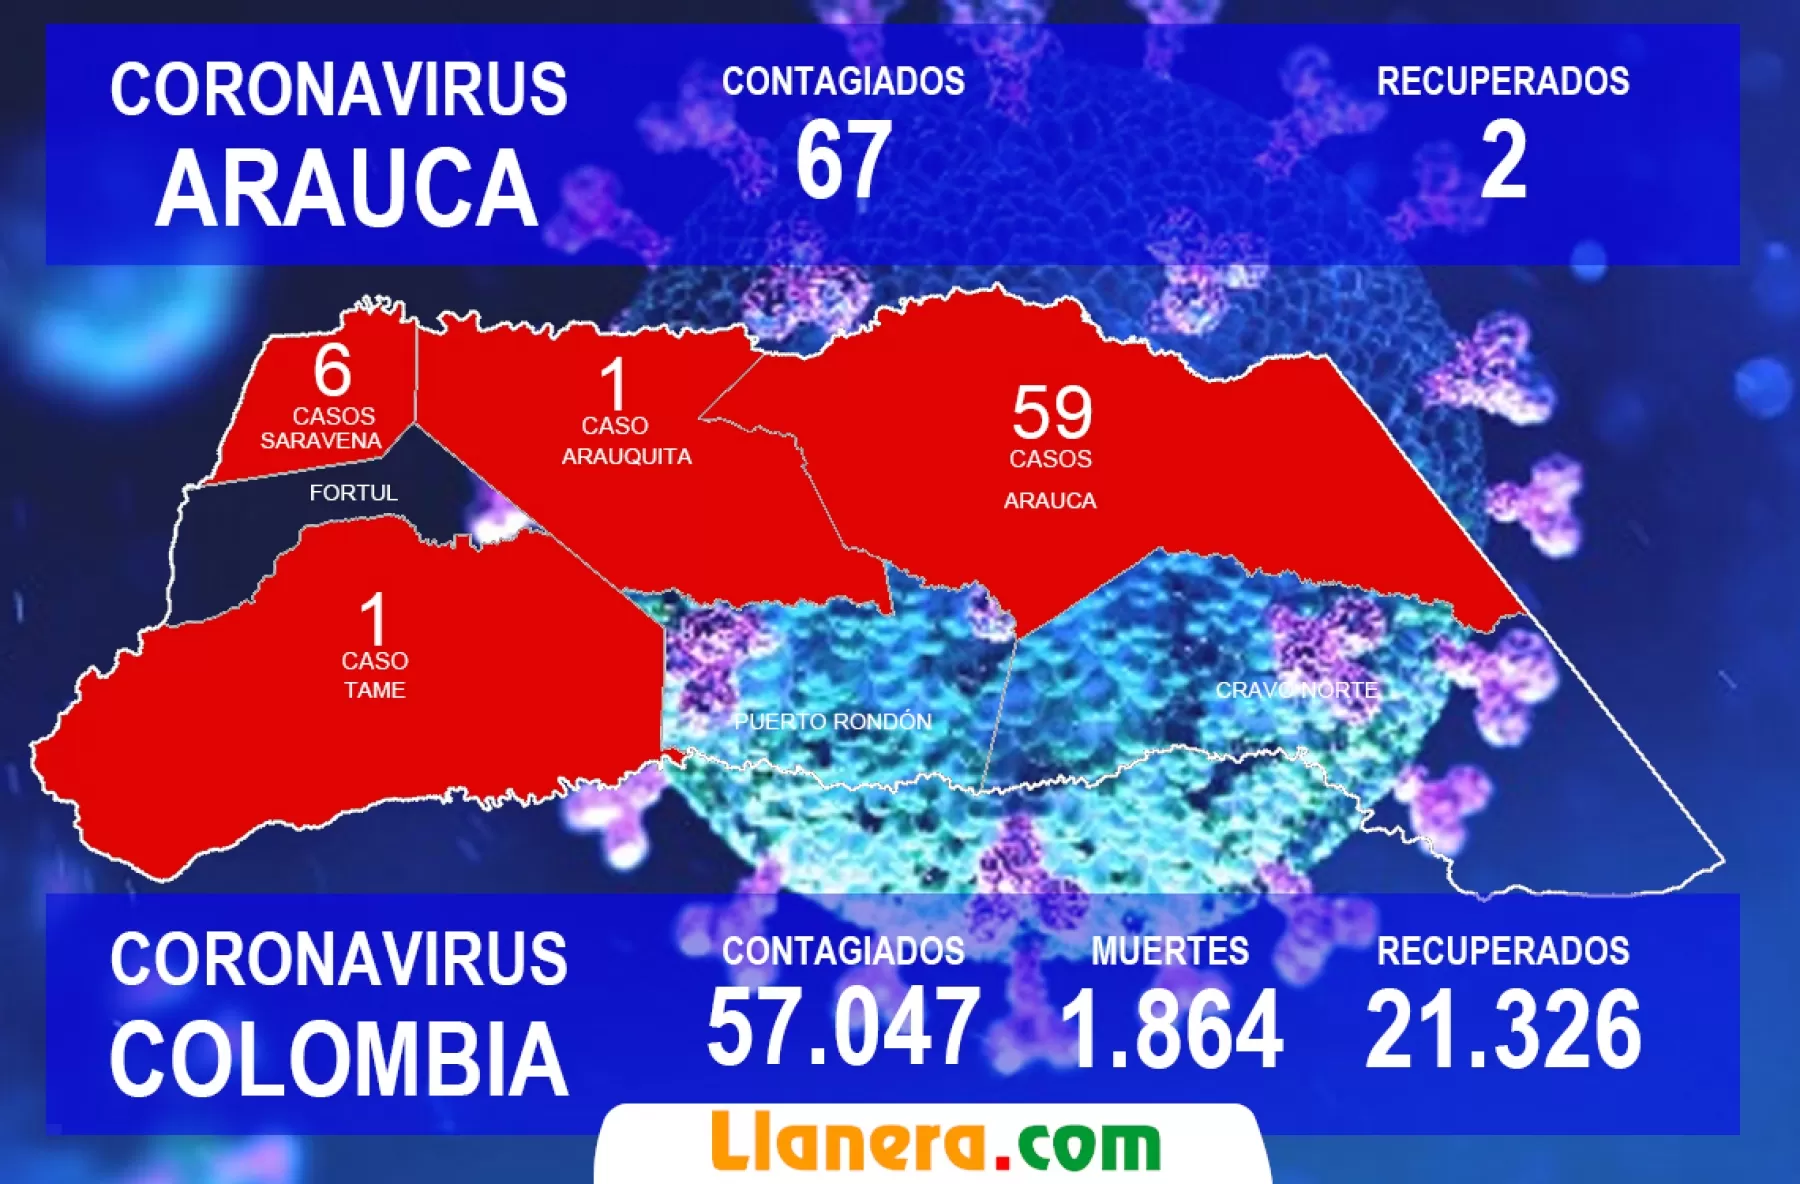 65 casos activos de Covid-19 han sido reportados en el departamento de Arauca, dos casos recuperados para un total de 67 casos.